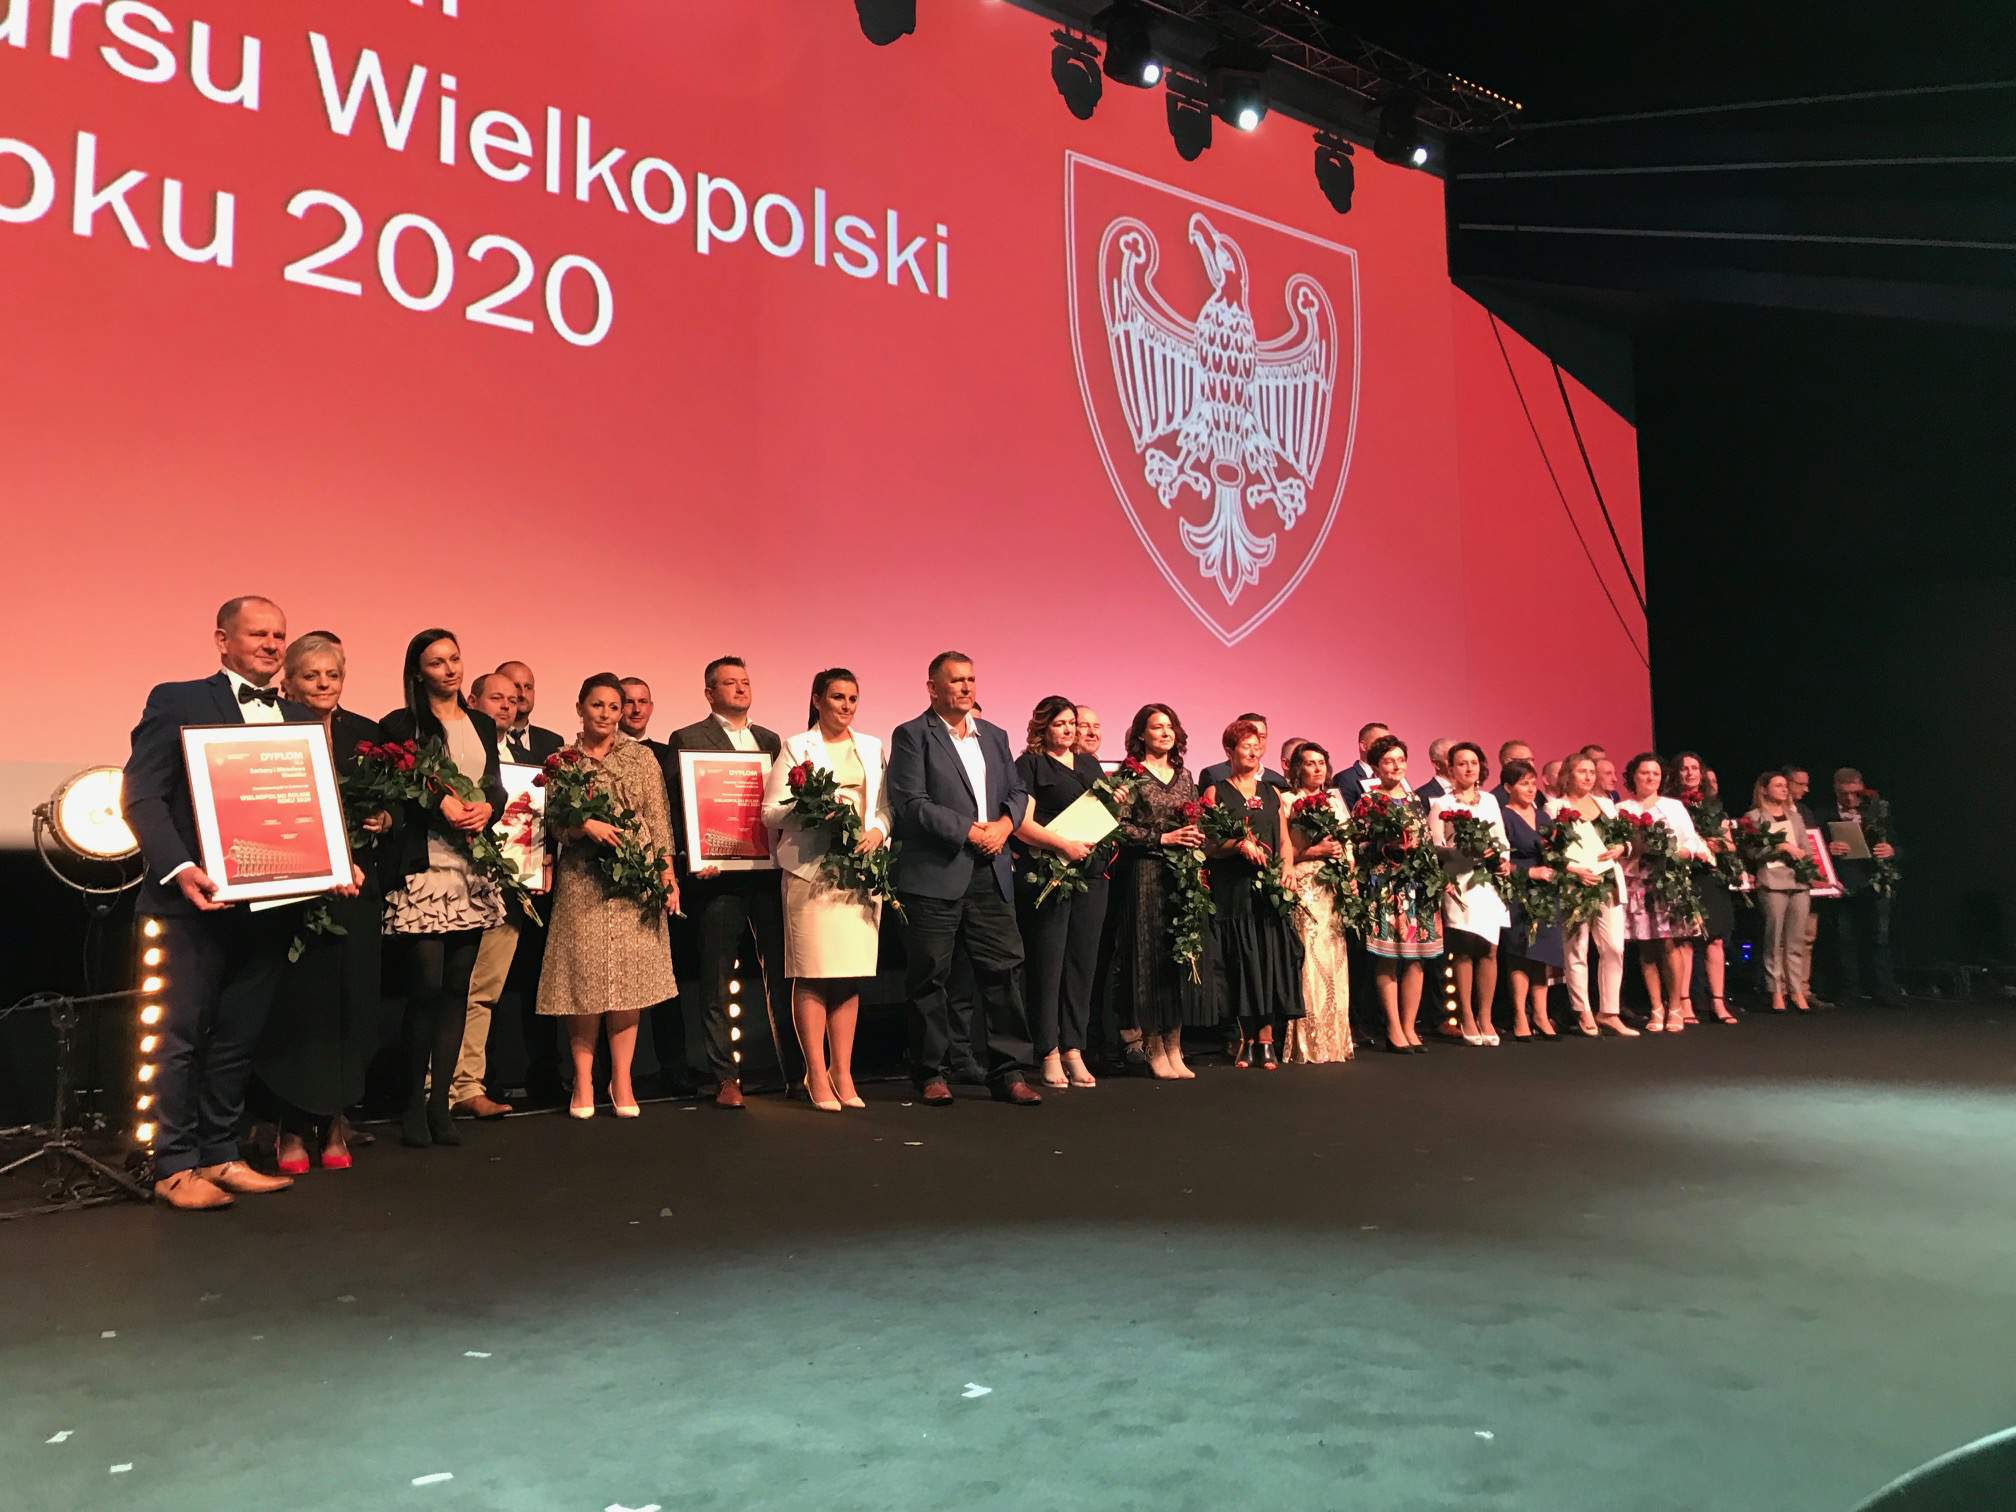 Nominowani do  XX edycji Konkursu Wielkopolski Rolnik Roku 2020.